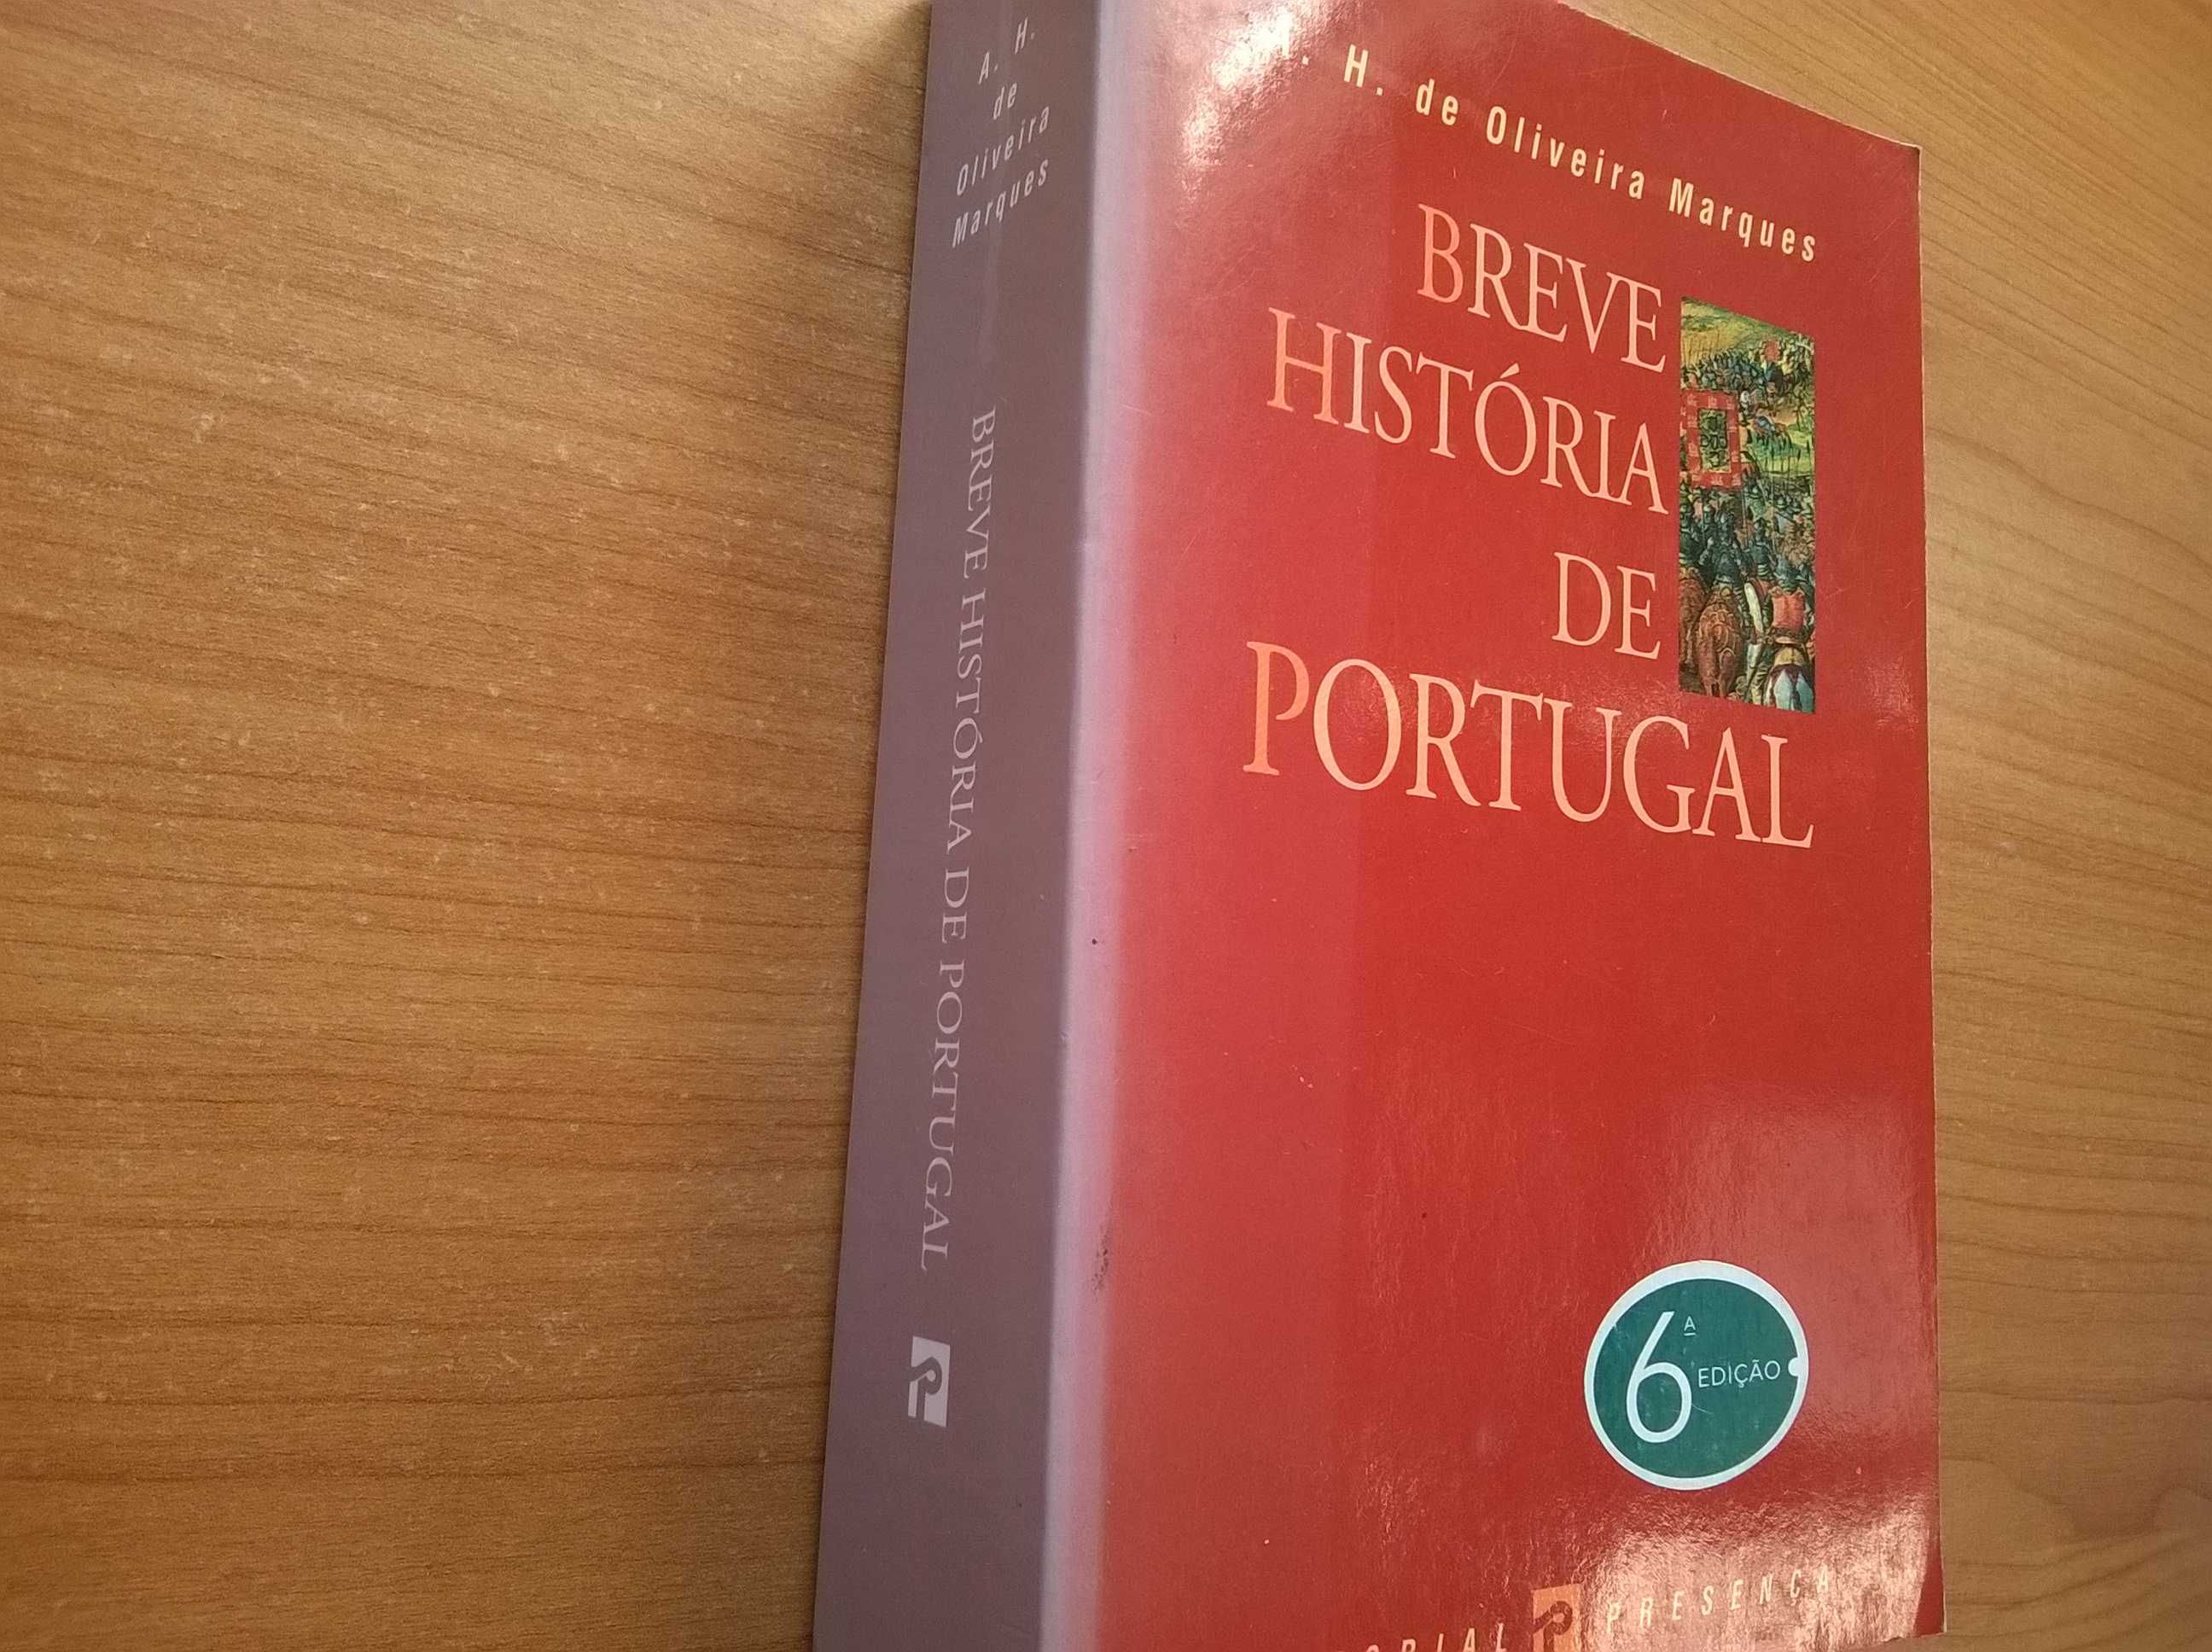 Breve História de Portugal - A. H. Oliveira Marques